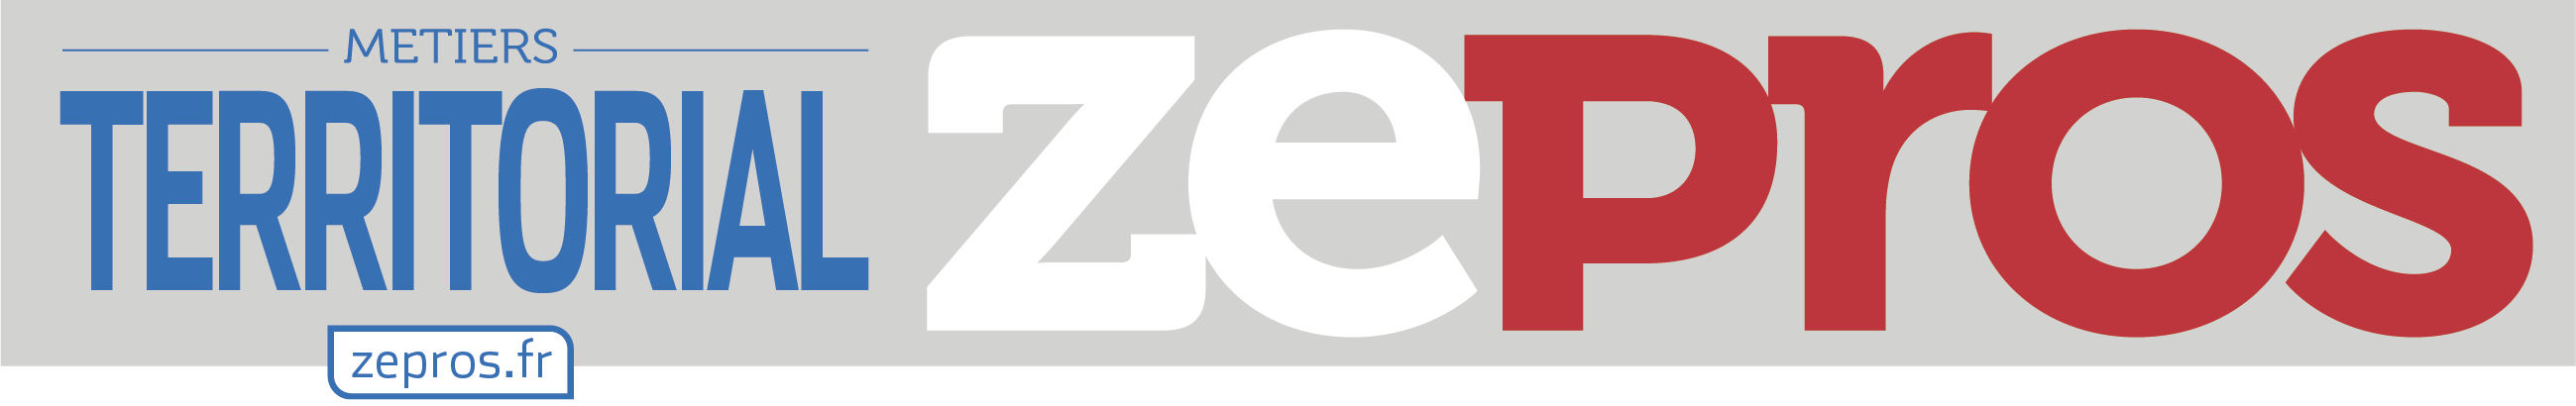 Créée en 2012, la marque Zepros est aujourd’hui leader de l’information professionnelle, avec 8 millions de lecteurs en 2014 et 3,8 millions d’exemplaires distribués au cœur des entreprises.